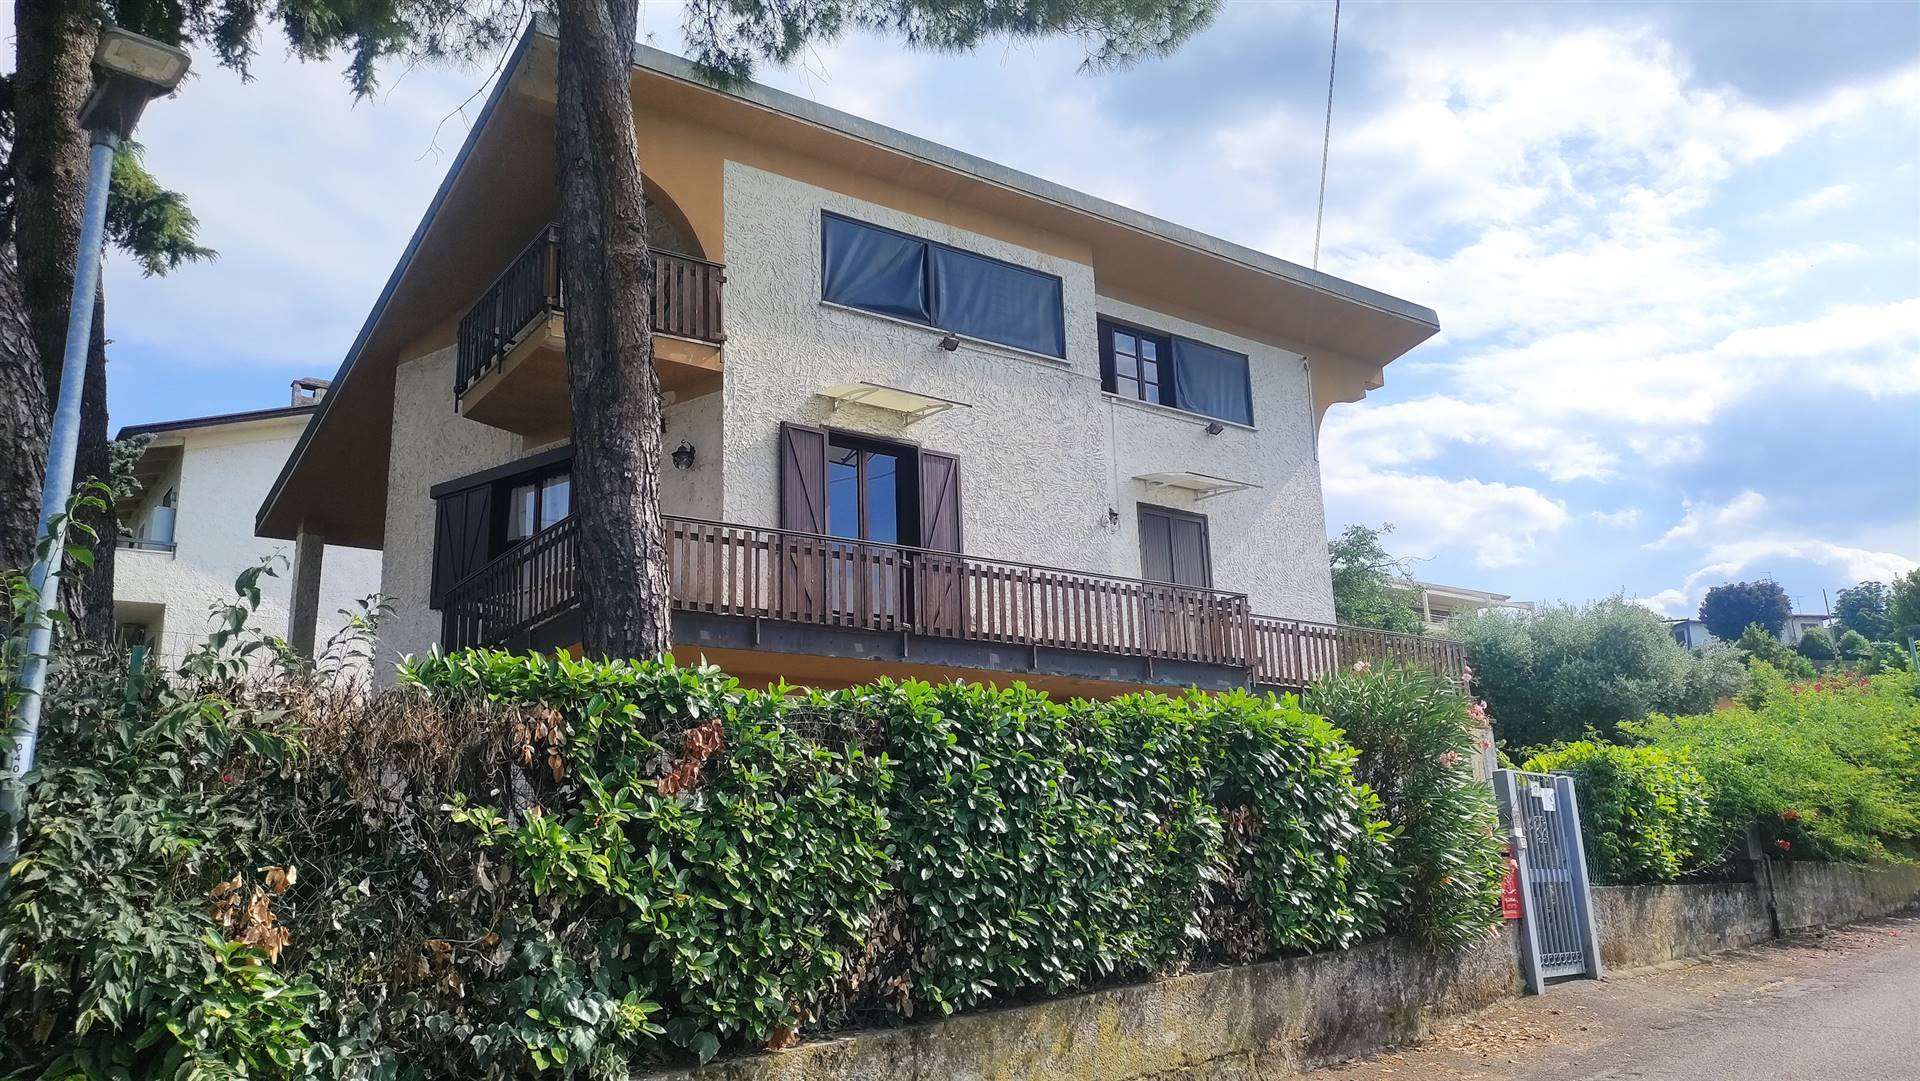 Peschiera del Garda - Boschetti - In strategischer Lage bieten wir Ihnen eine Villa auf einem 1000 qm großen Grundstück an, die sich auf drei Ebenen 